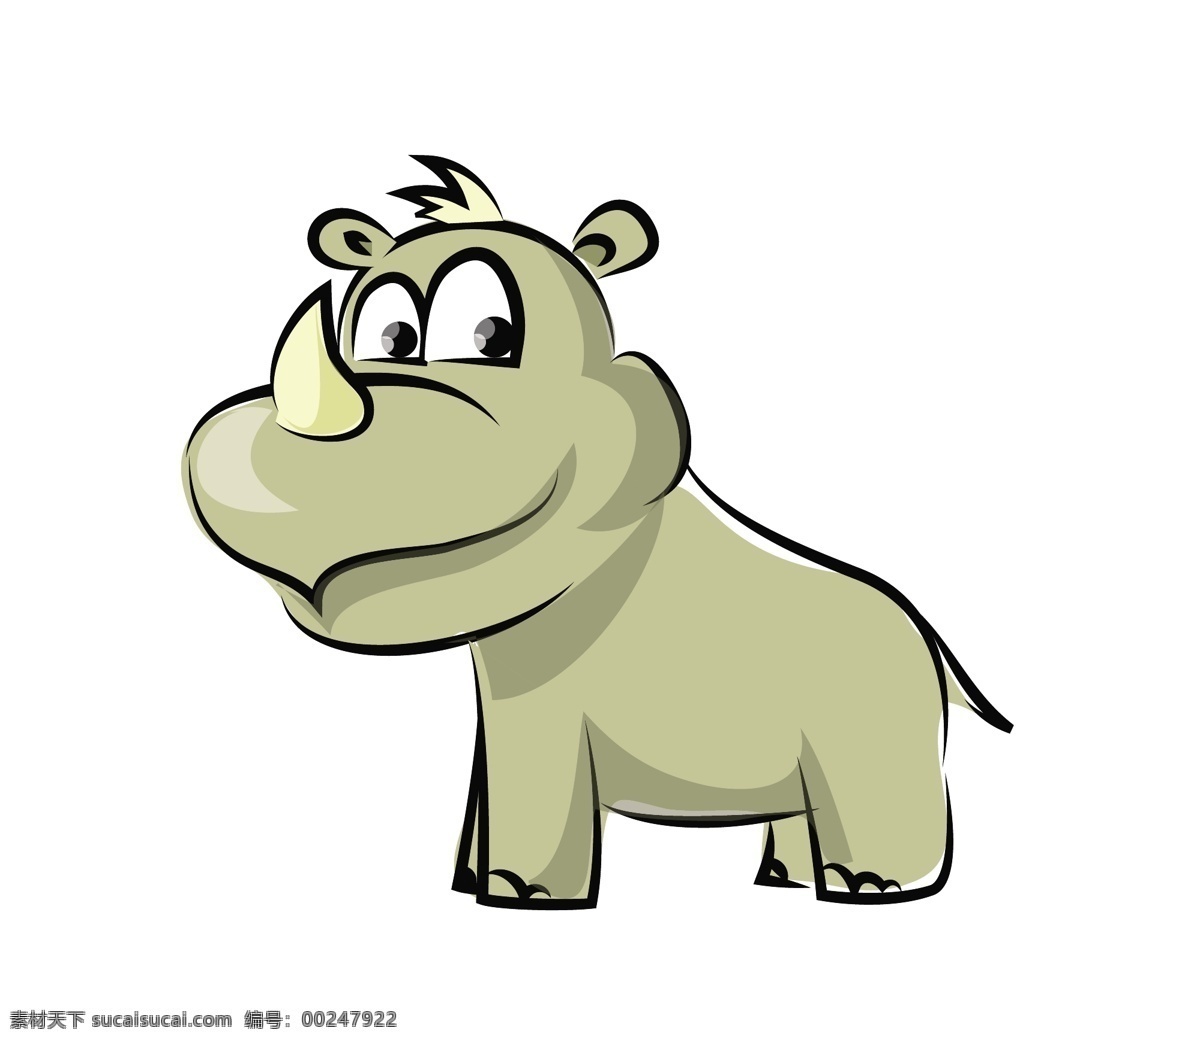 矢量 卡通 犀牛 动物 插画 卡通动物漫画 卡通形象 矢量人物 矢量素材 矢量动物